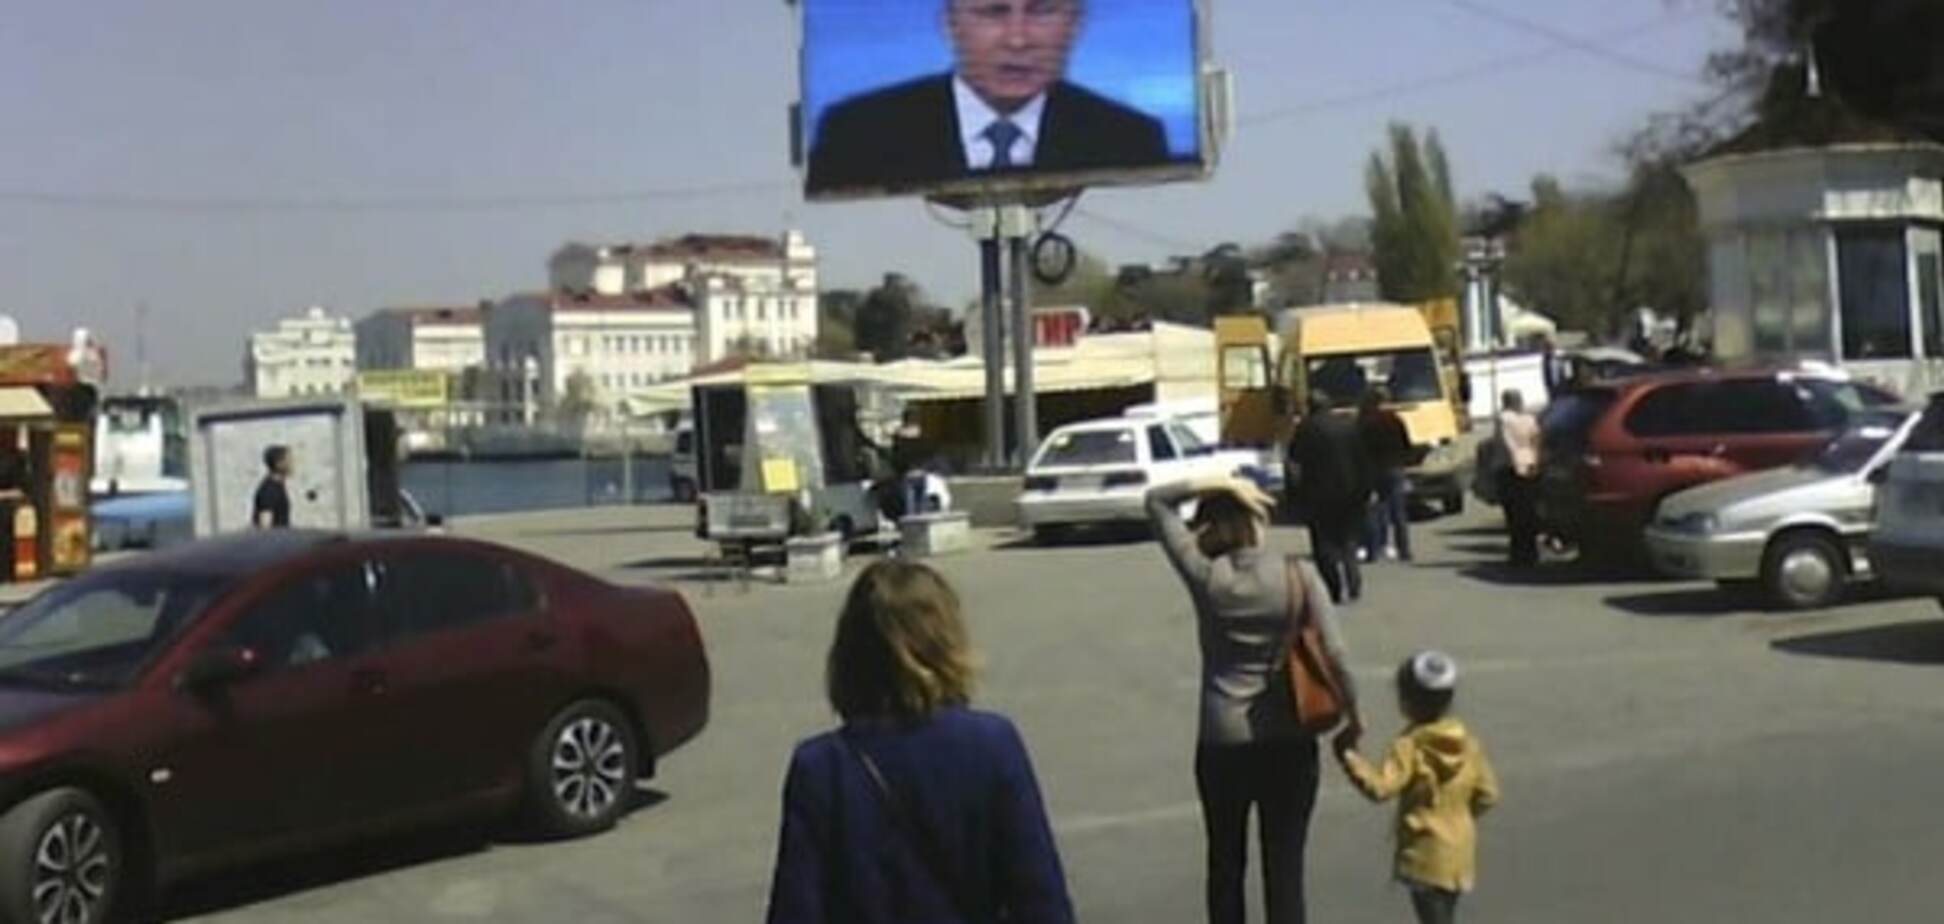 Ніхто не прийшов: кримчани проігнорували 'Пряму лінію' Путіна